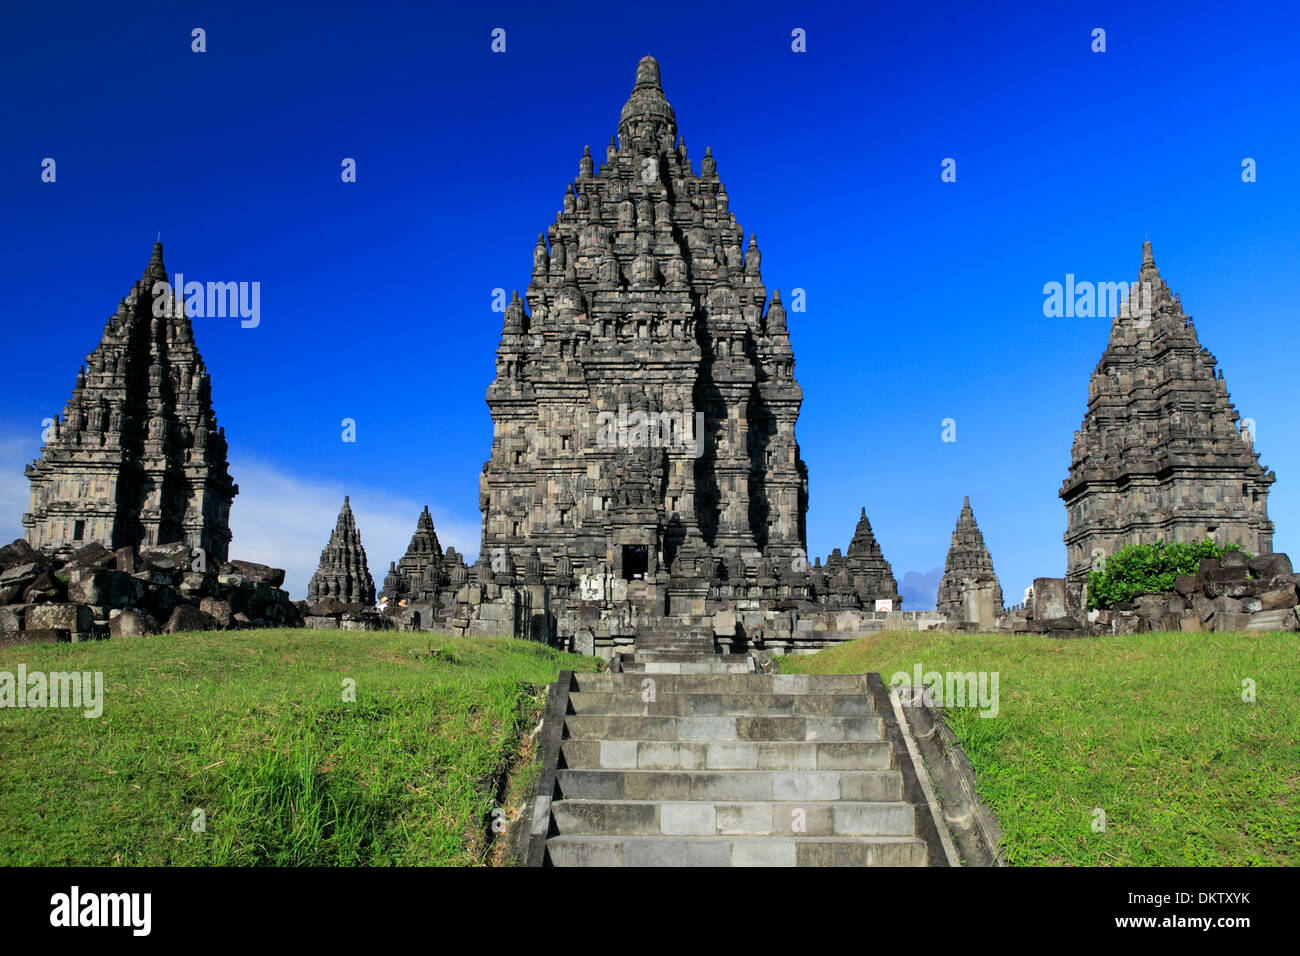 Roro Jonggrang, Hindu temple (9th century), Prambanan, near Yogyakarta, Java, Indonesia Stock Photo